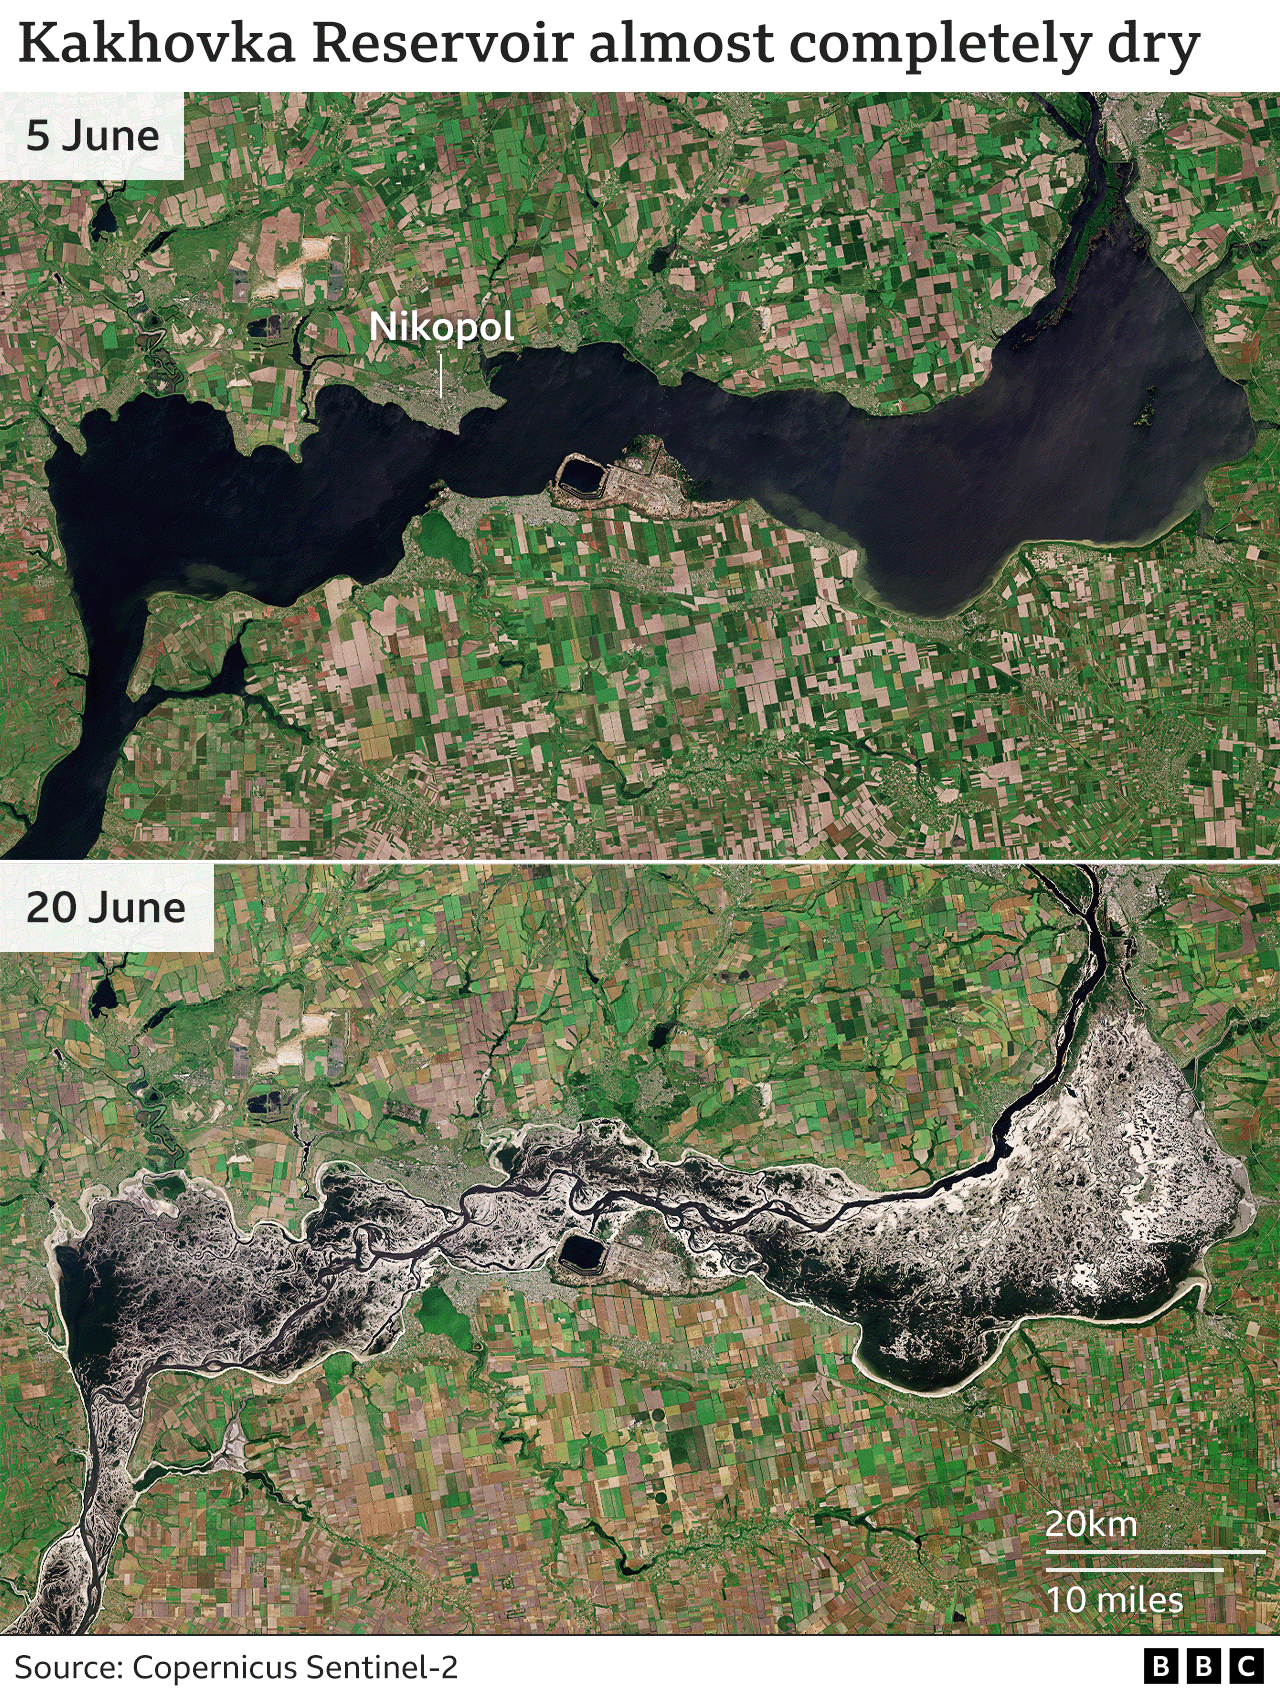 Два зображення Каховського водосховища, одне 5 червня, коли водосховище було заповнене, а інше 20 червня, коли рівень води у водосховищі значно впав